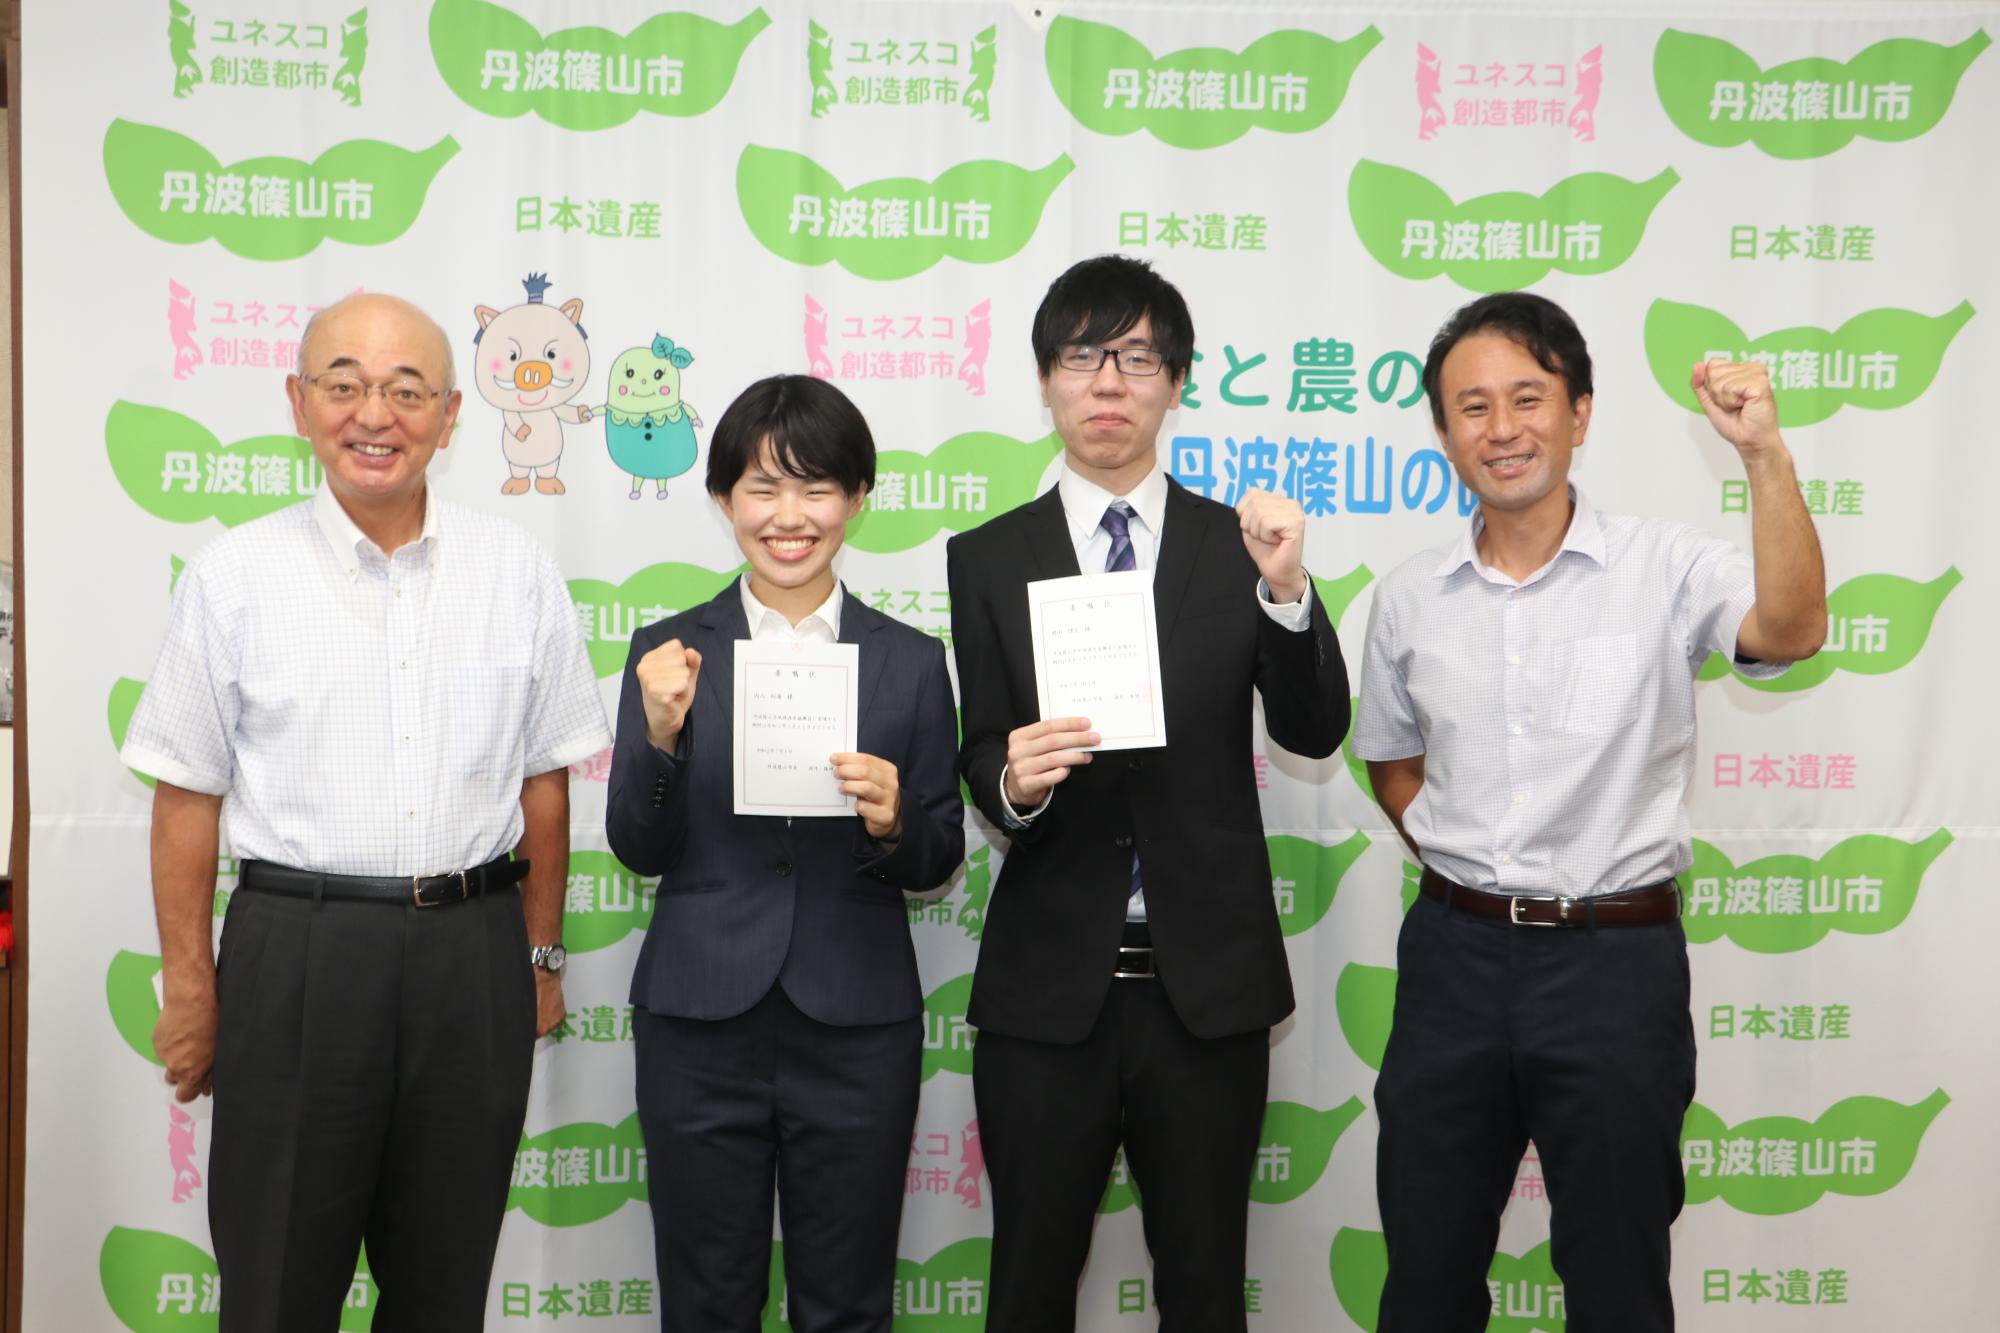 左から市長、内山さん、岡田さん、NPO法人「里地里山問題研究所」代表鈴木さん